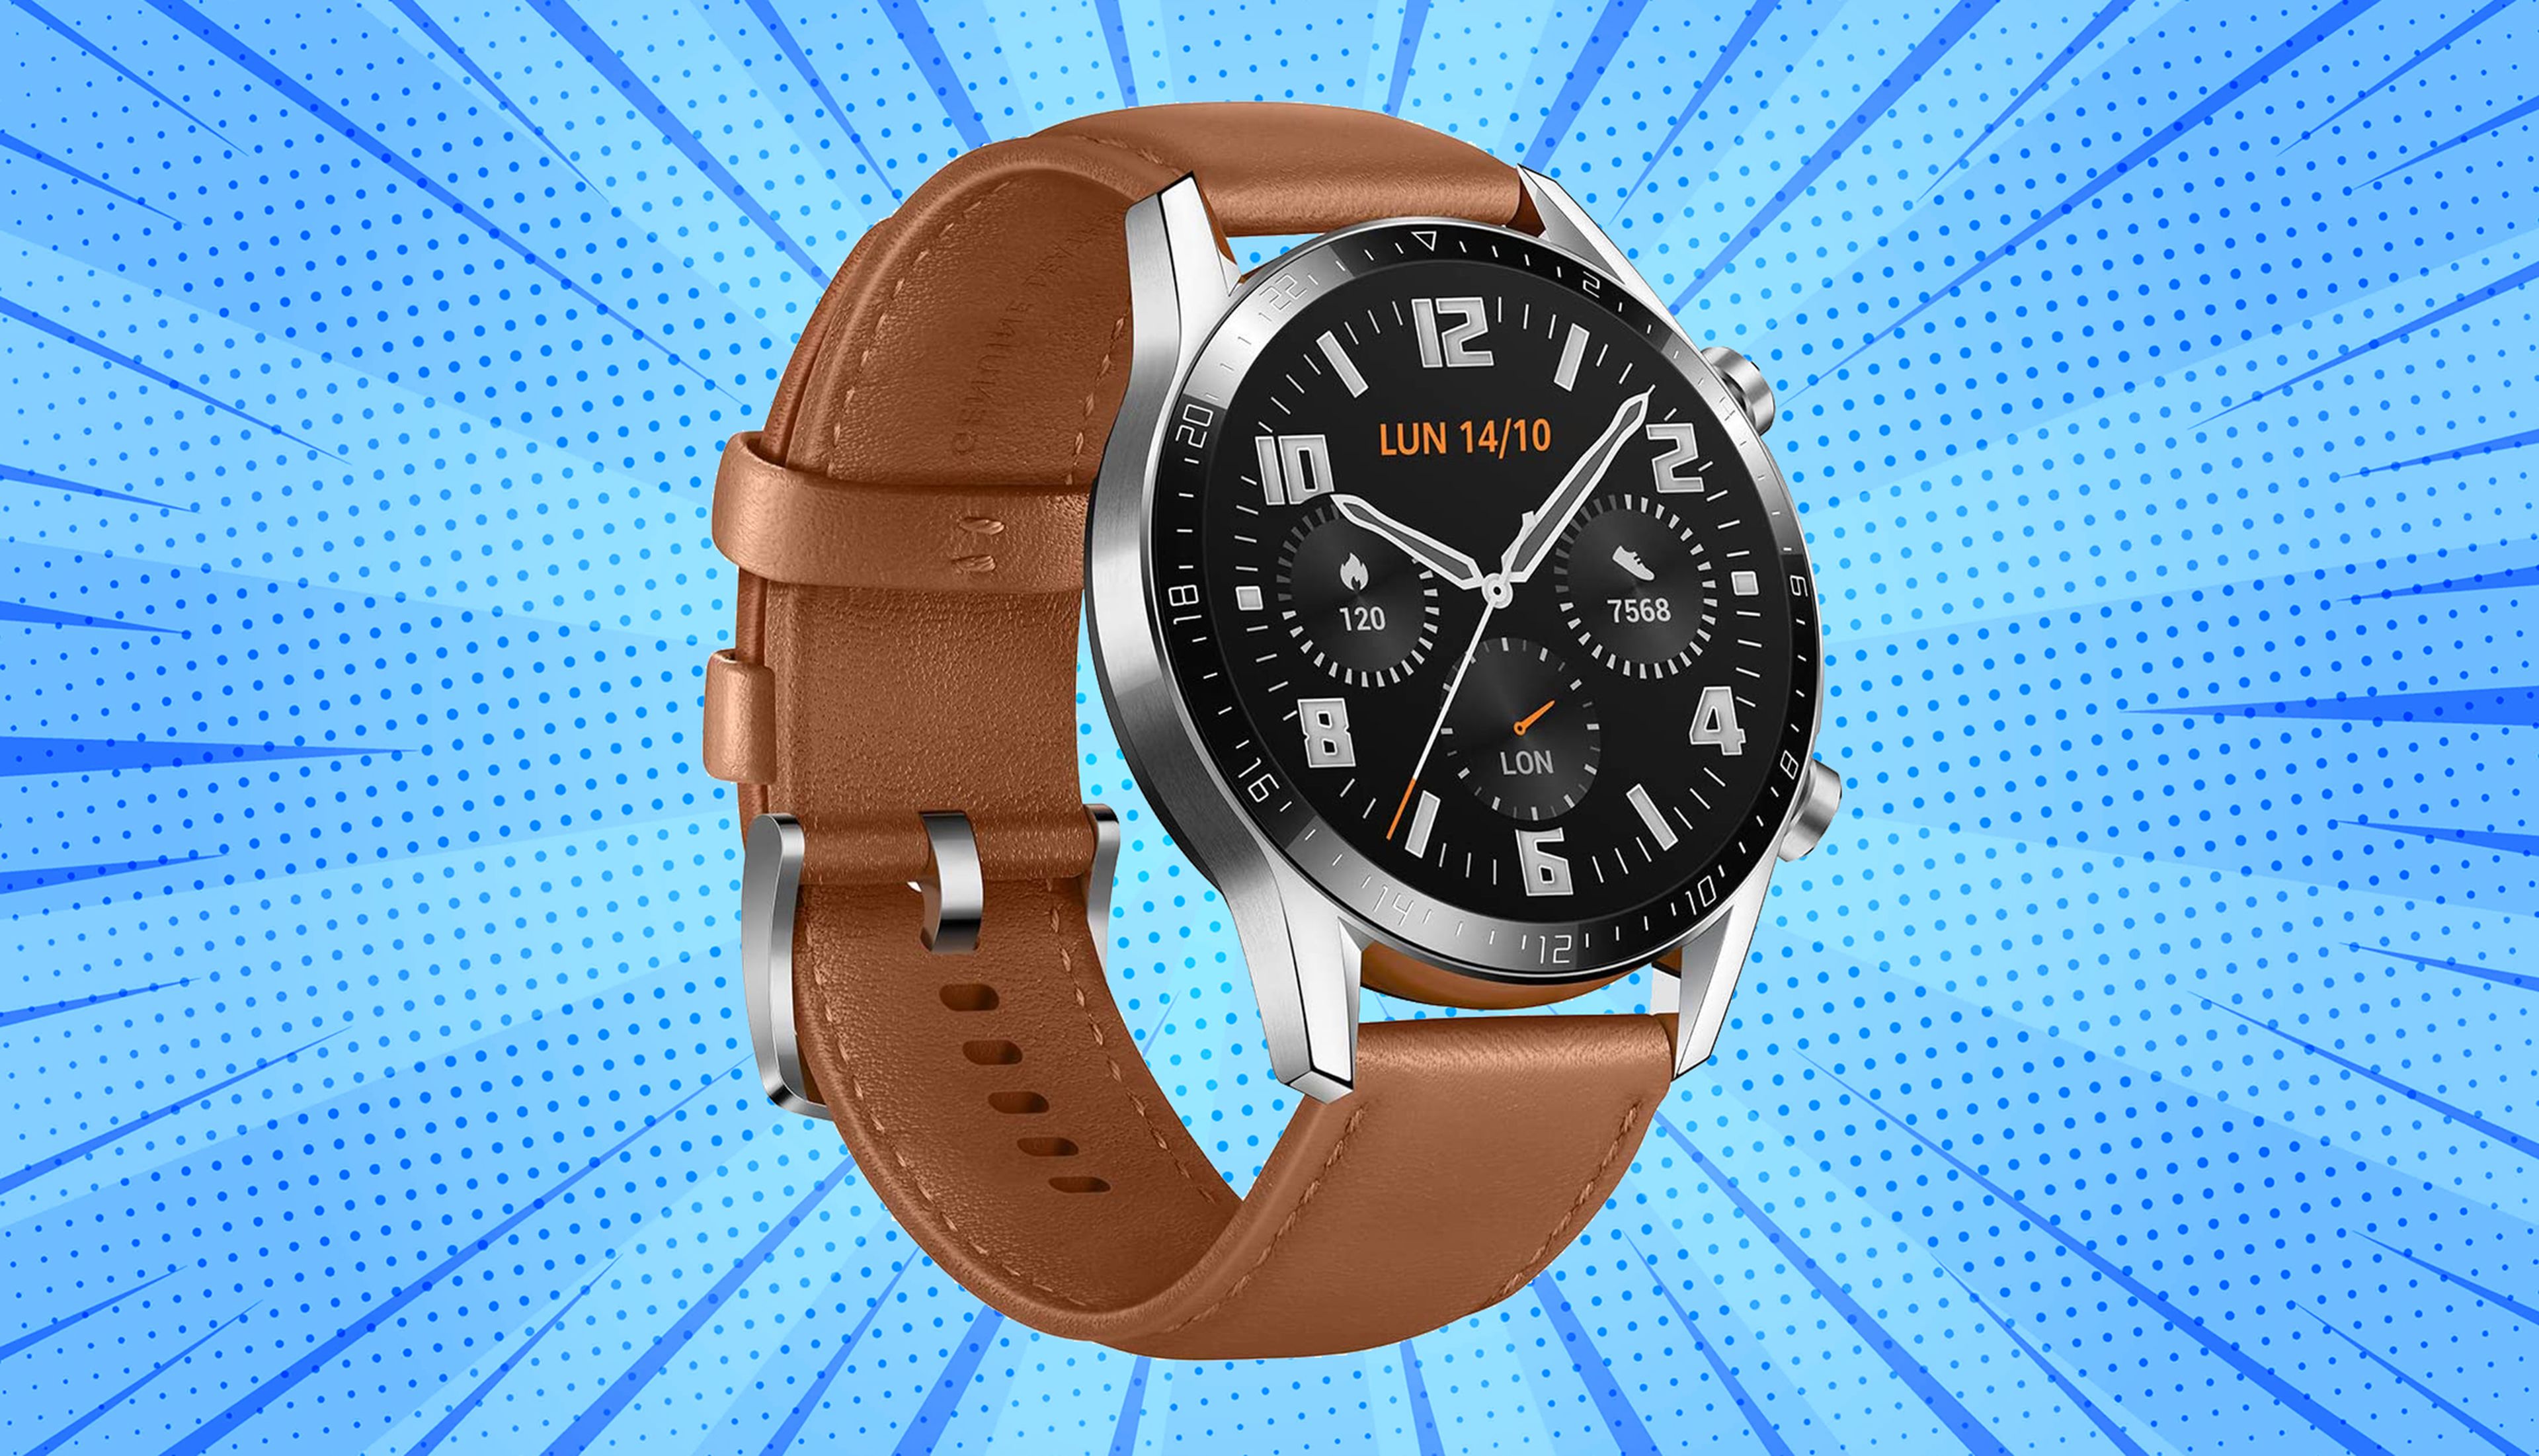 rebaja casi 100€ el smartwatch Huawei Watch GT2: diseño clásico y  GPS por solo 140€